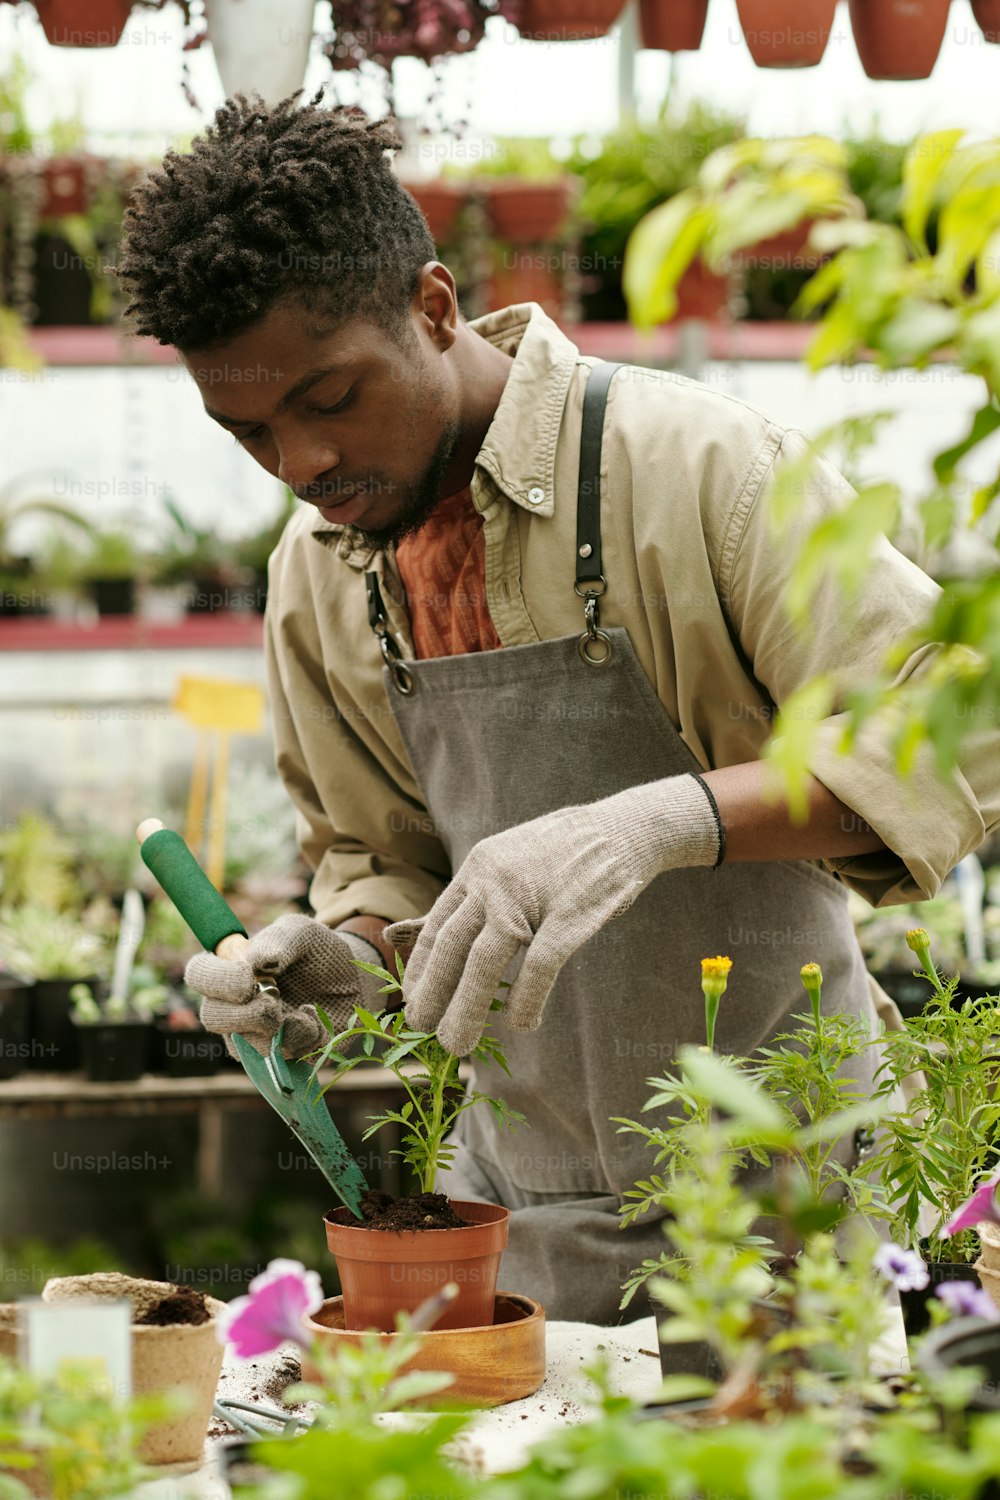 작업복을 입은 아프리카의 젊은 정원사는 온실에서 일하는 테이블에 화분에 관엽 식물을 심고 있다